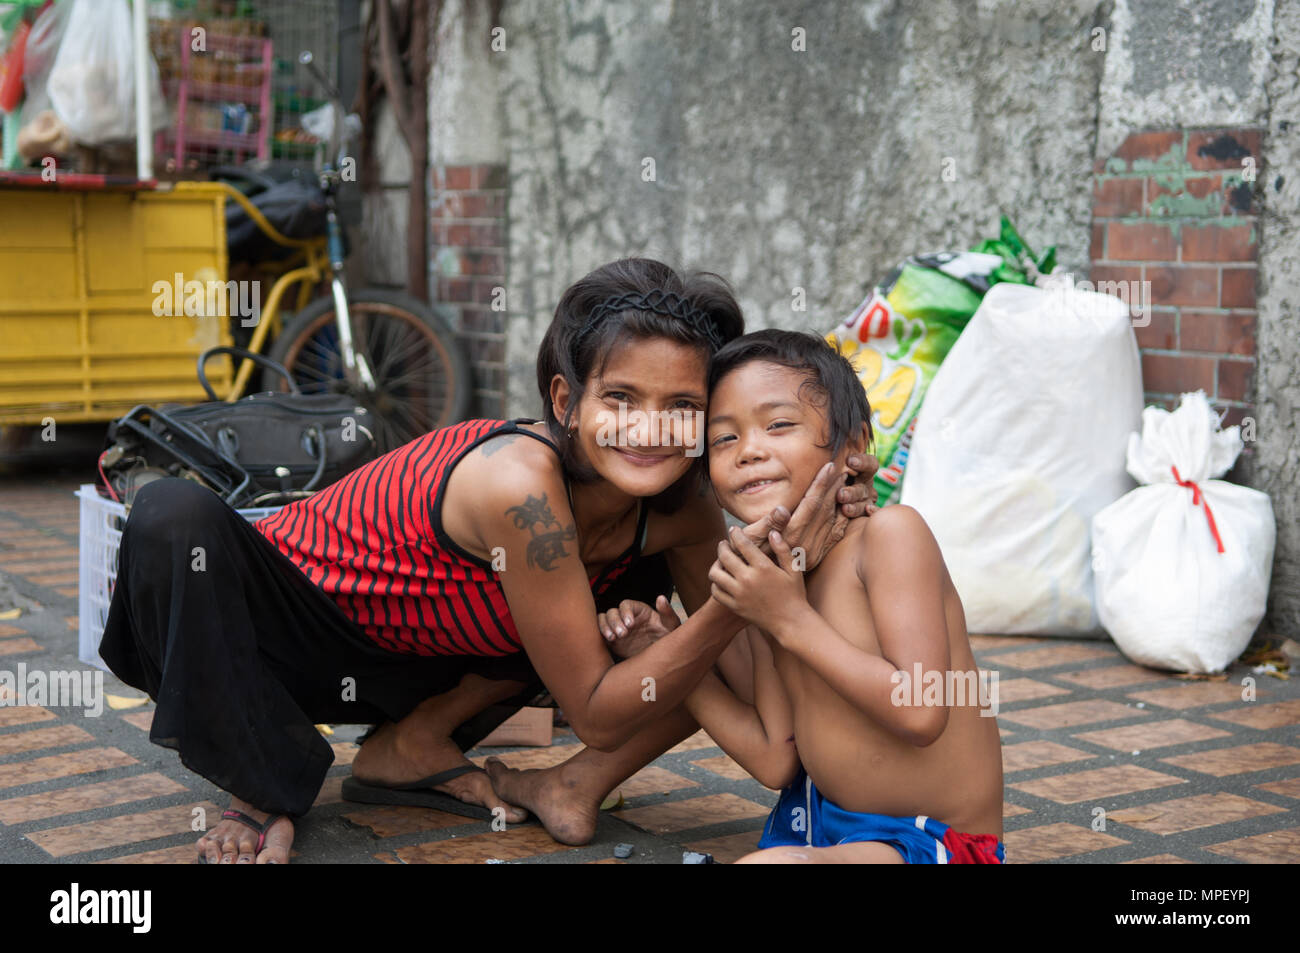 Un sans-abri la mère et l'enfant, Manille, Philippines Banque D'Images